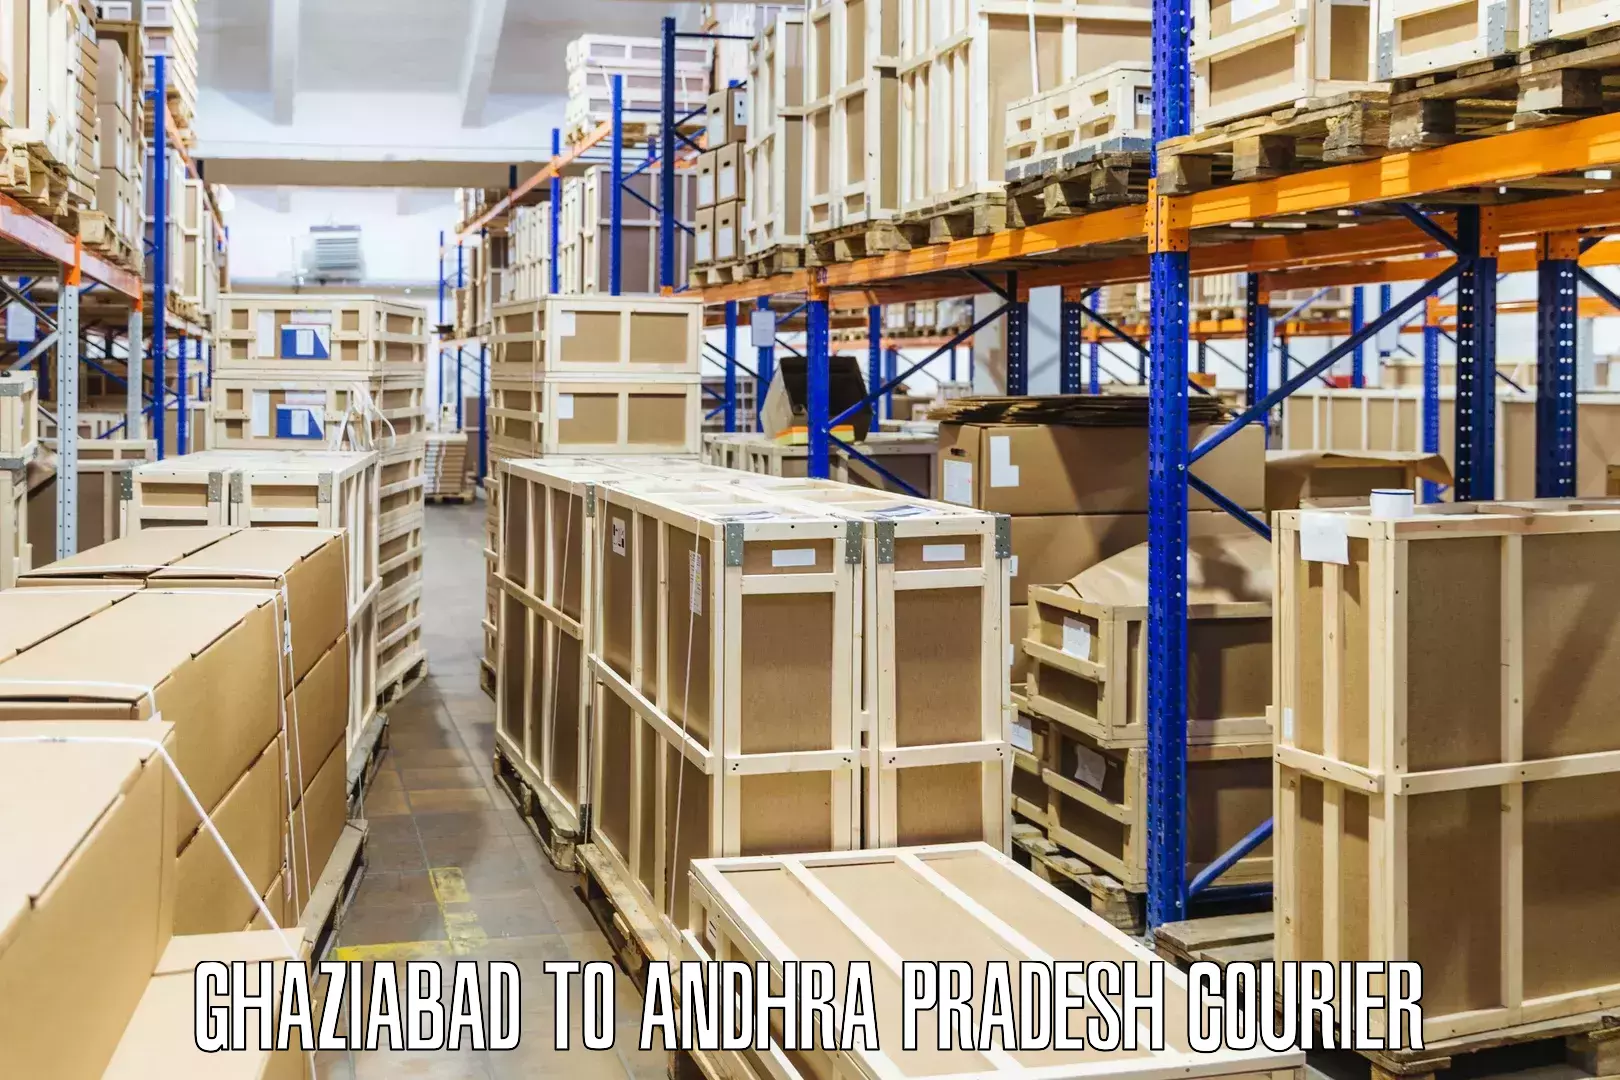 High-capacity parcel service Ghaziabad to Rajayyapeta